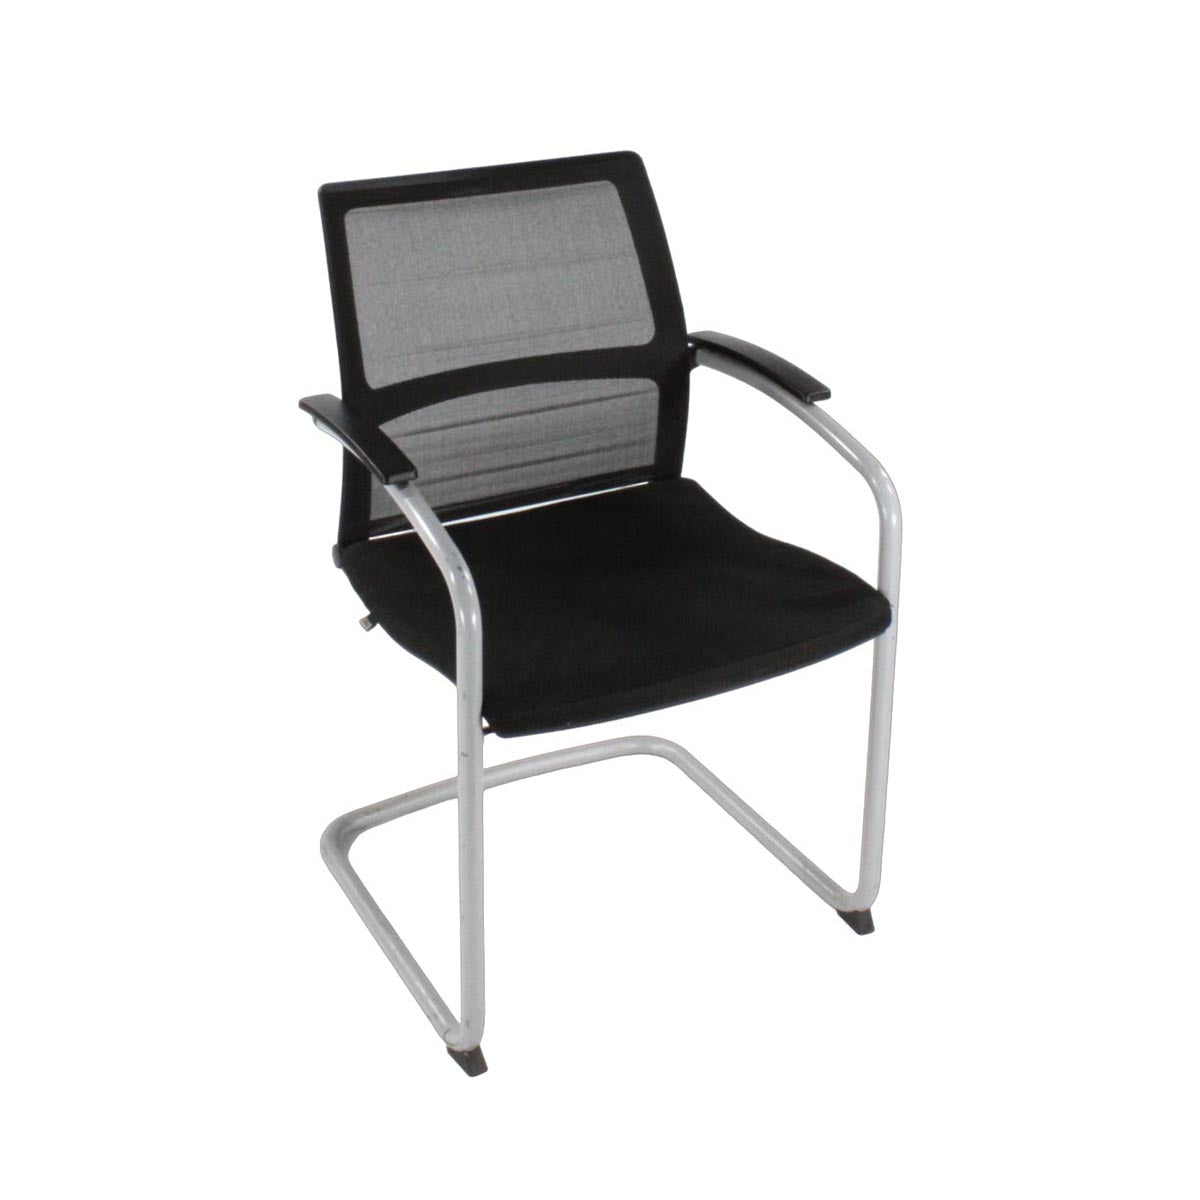 Sedus : Chaise cantilever ouverte avec dossier en maille en tissu noir - Remis à neuf